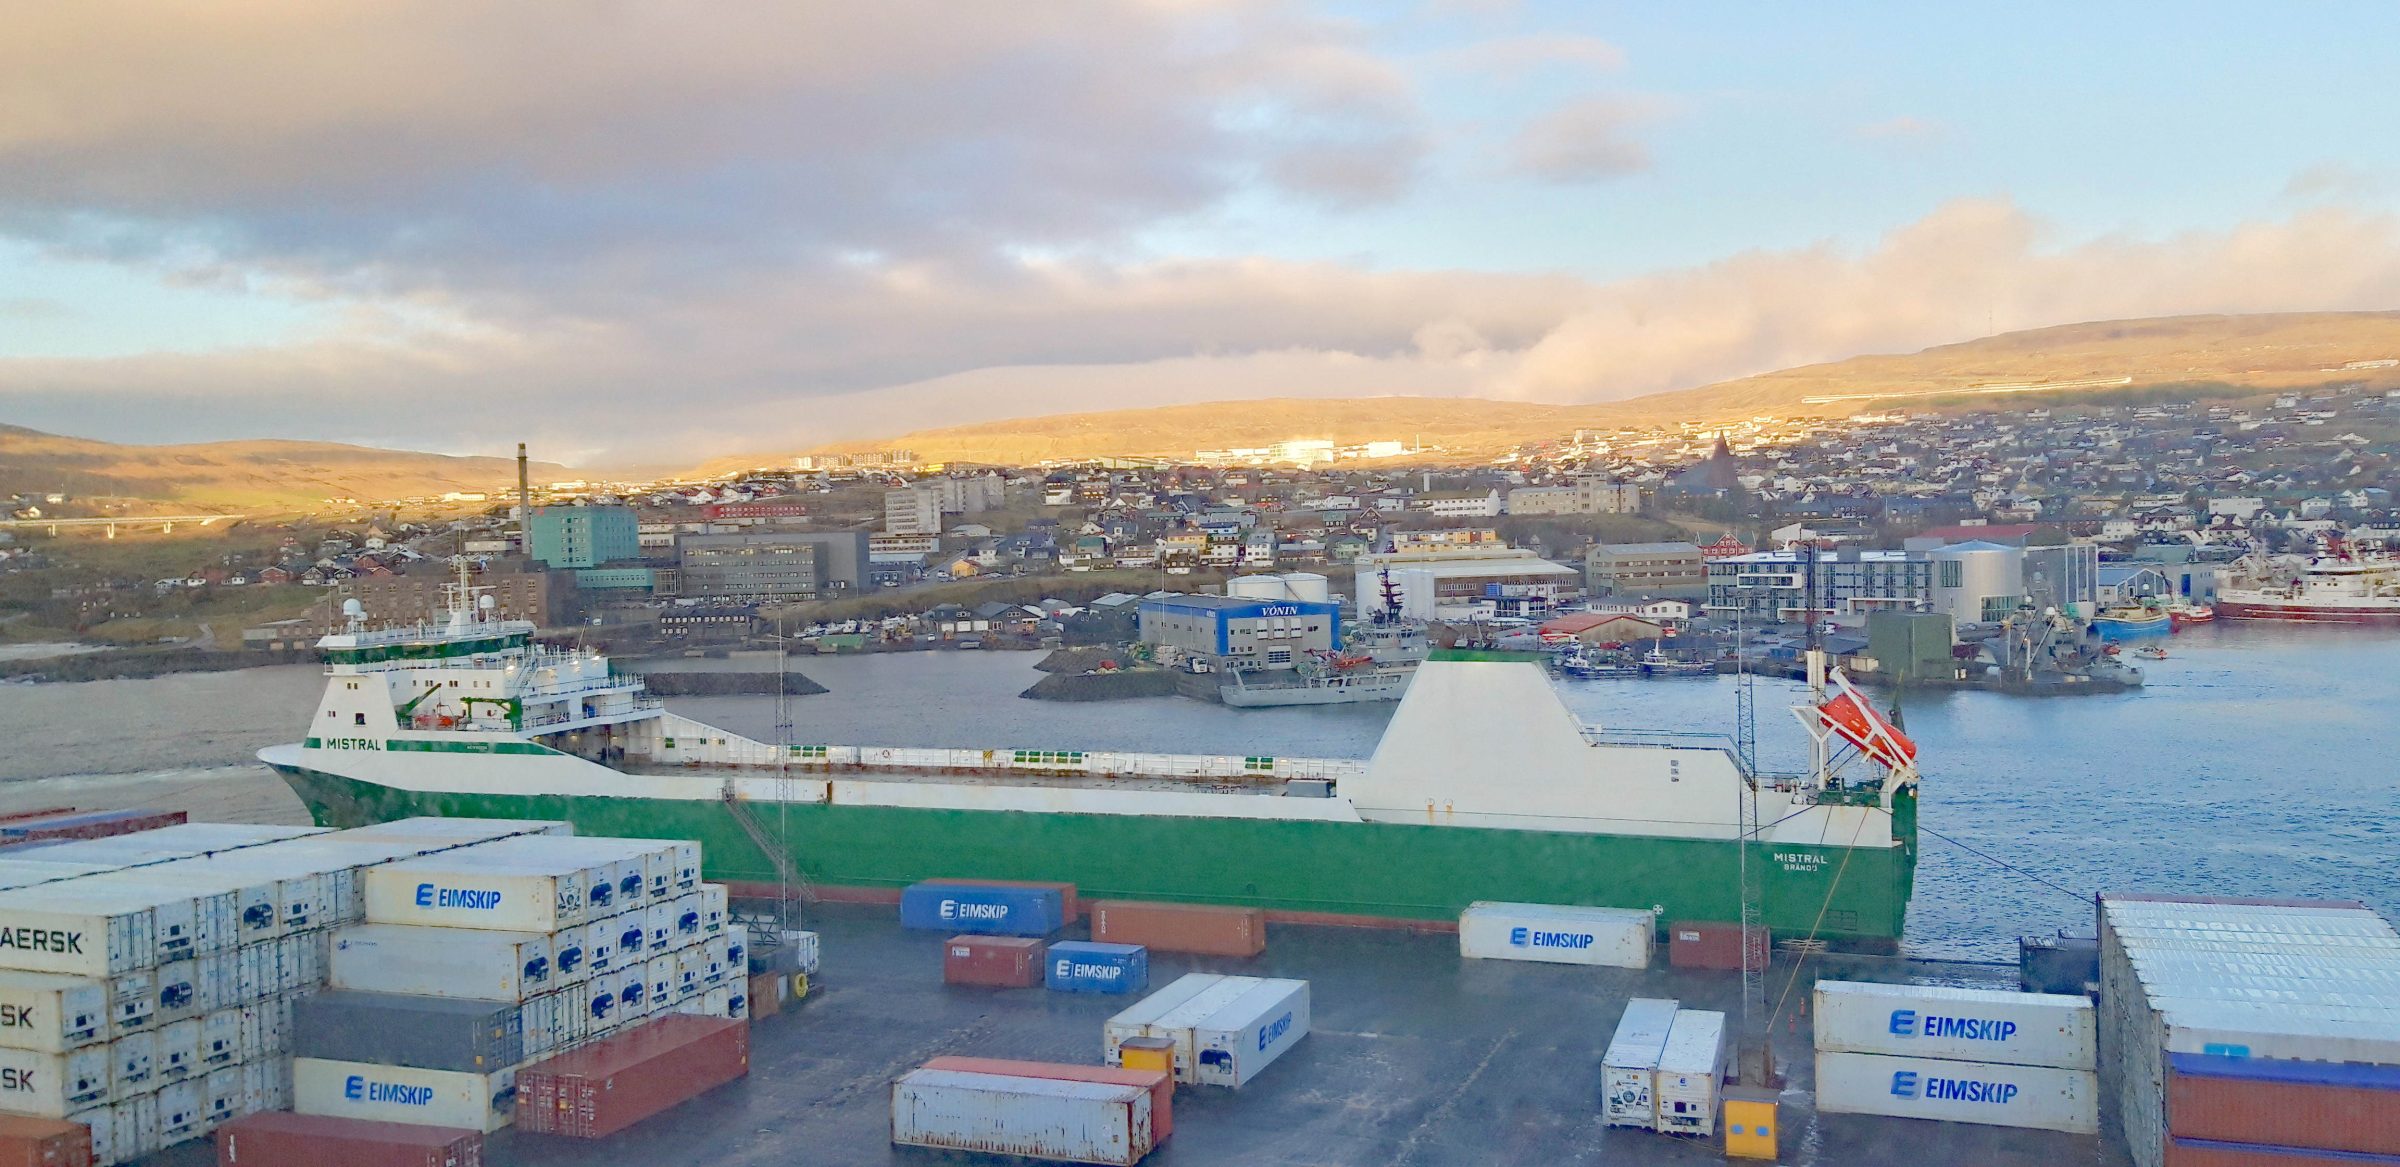 Torshavn | Iceland and Faroe Islands in winter